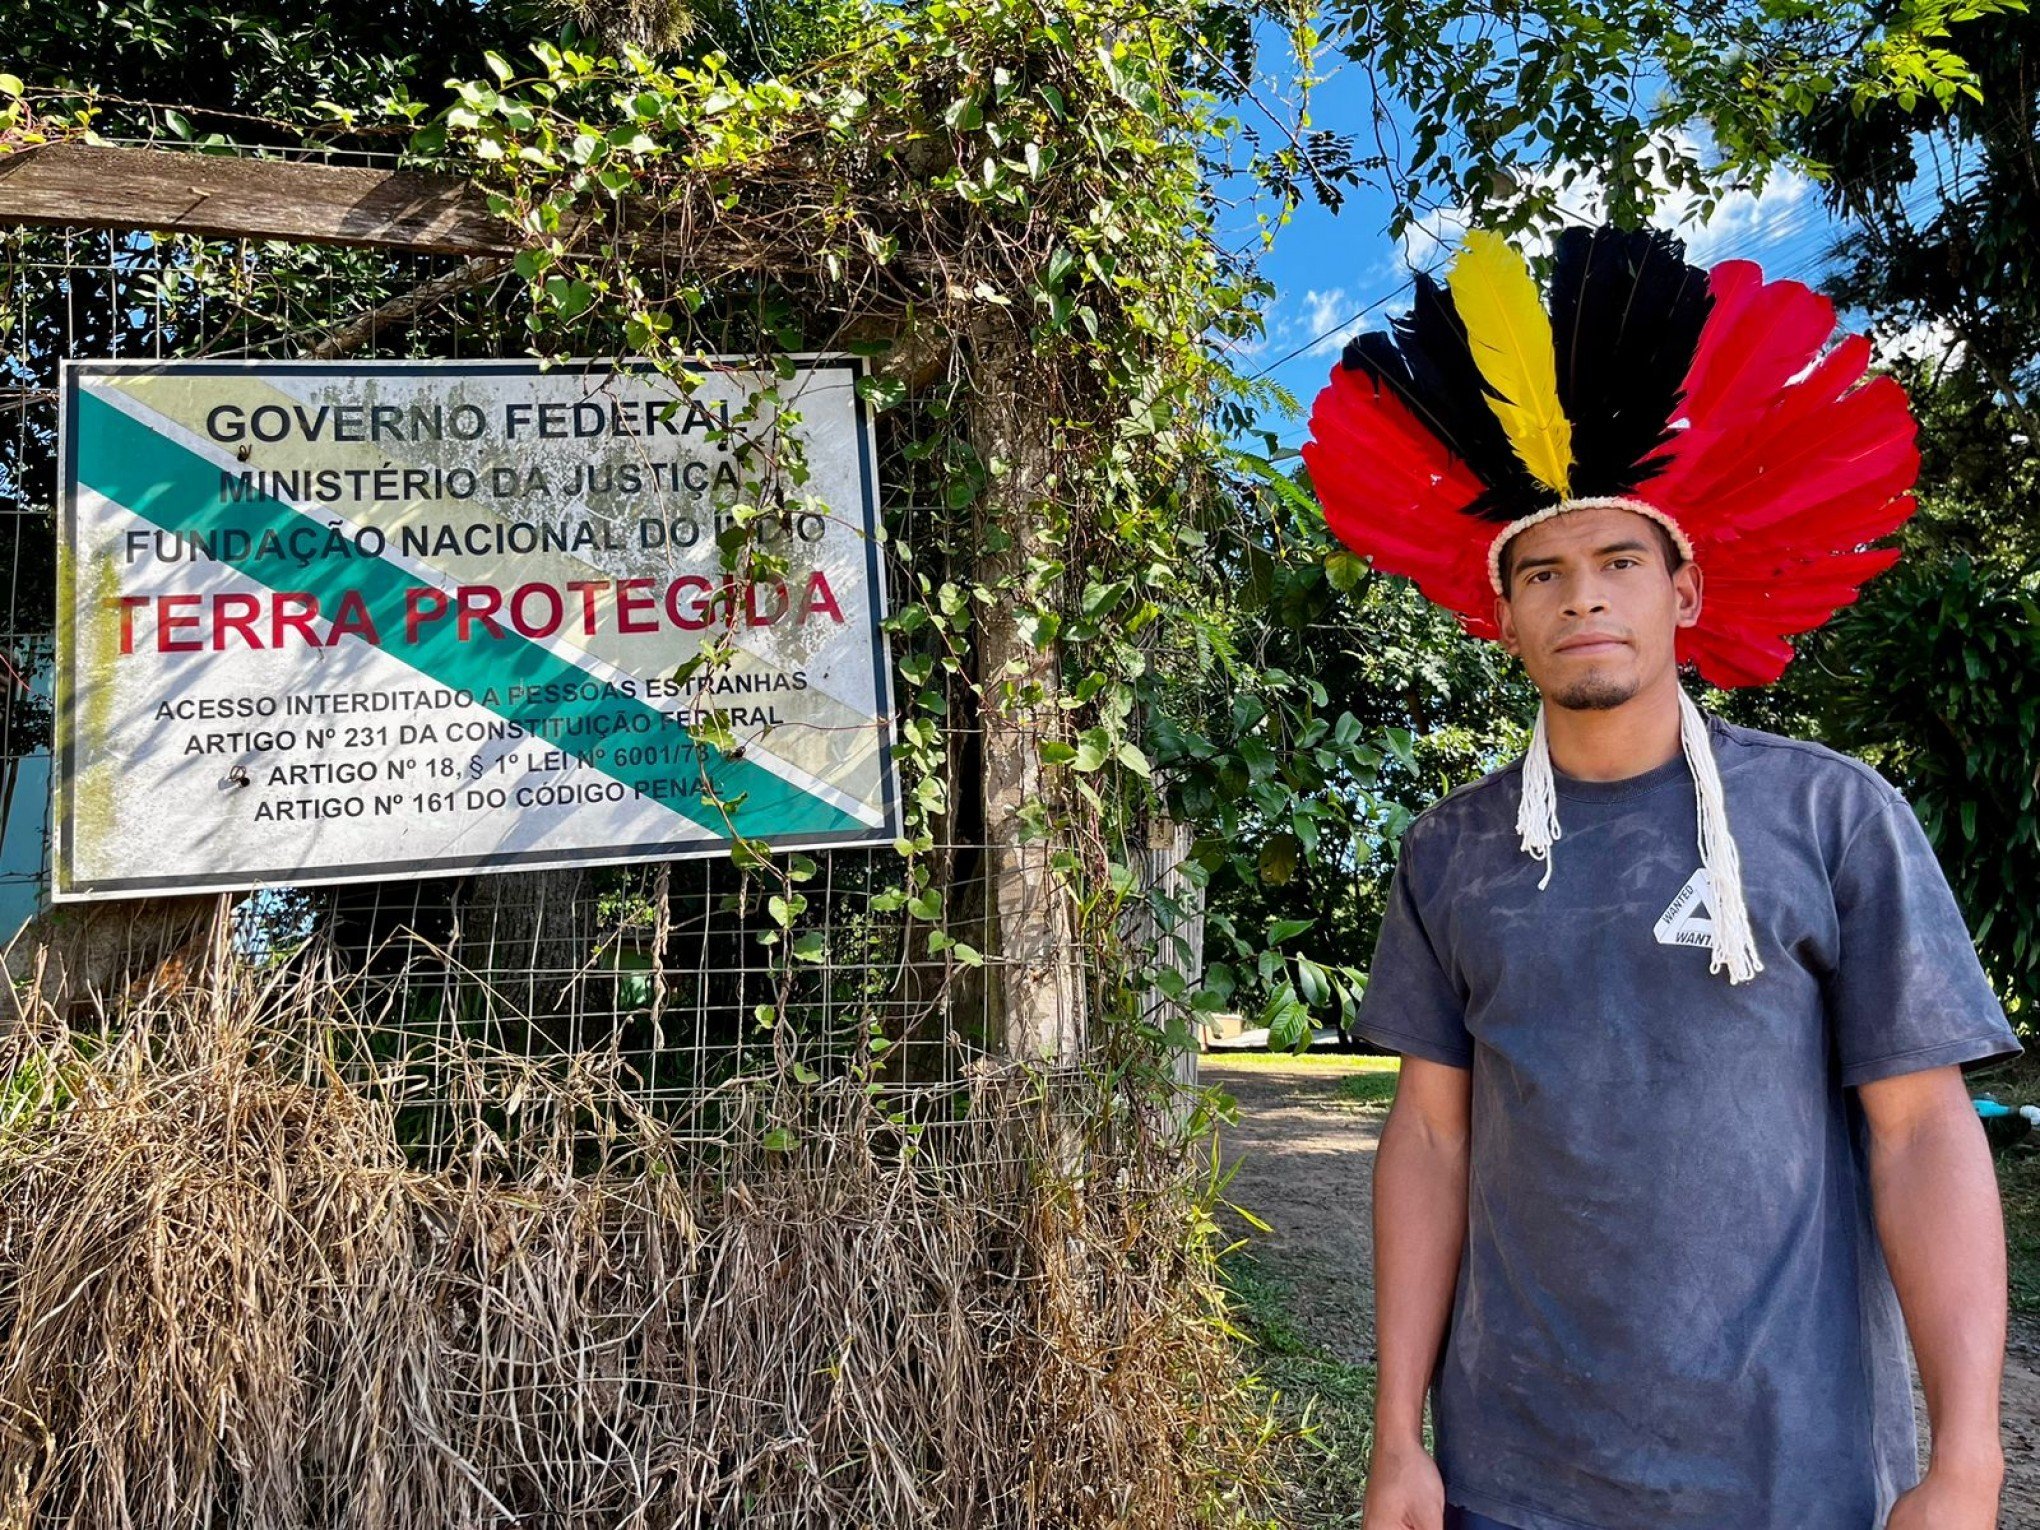 19 DE ABRIL: Data para ressaltar a cultura e reivindicar direitos dos indígenas